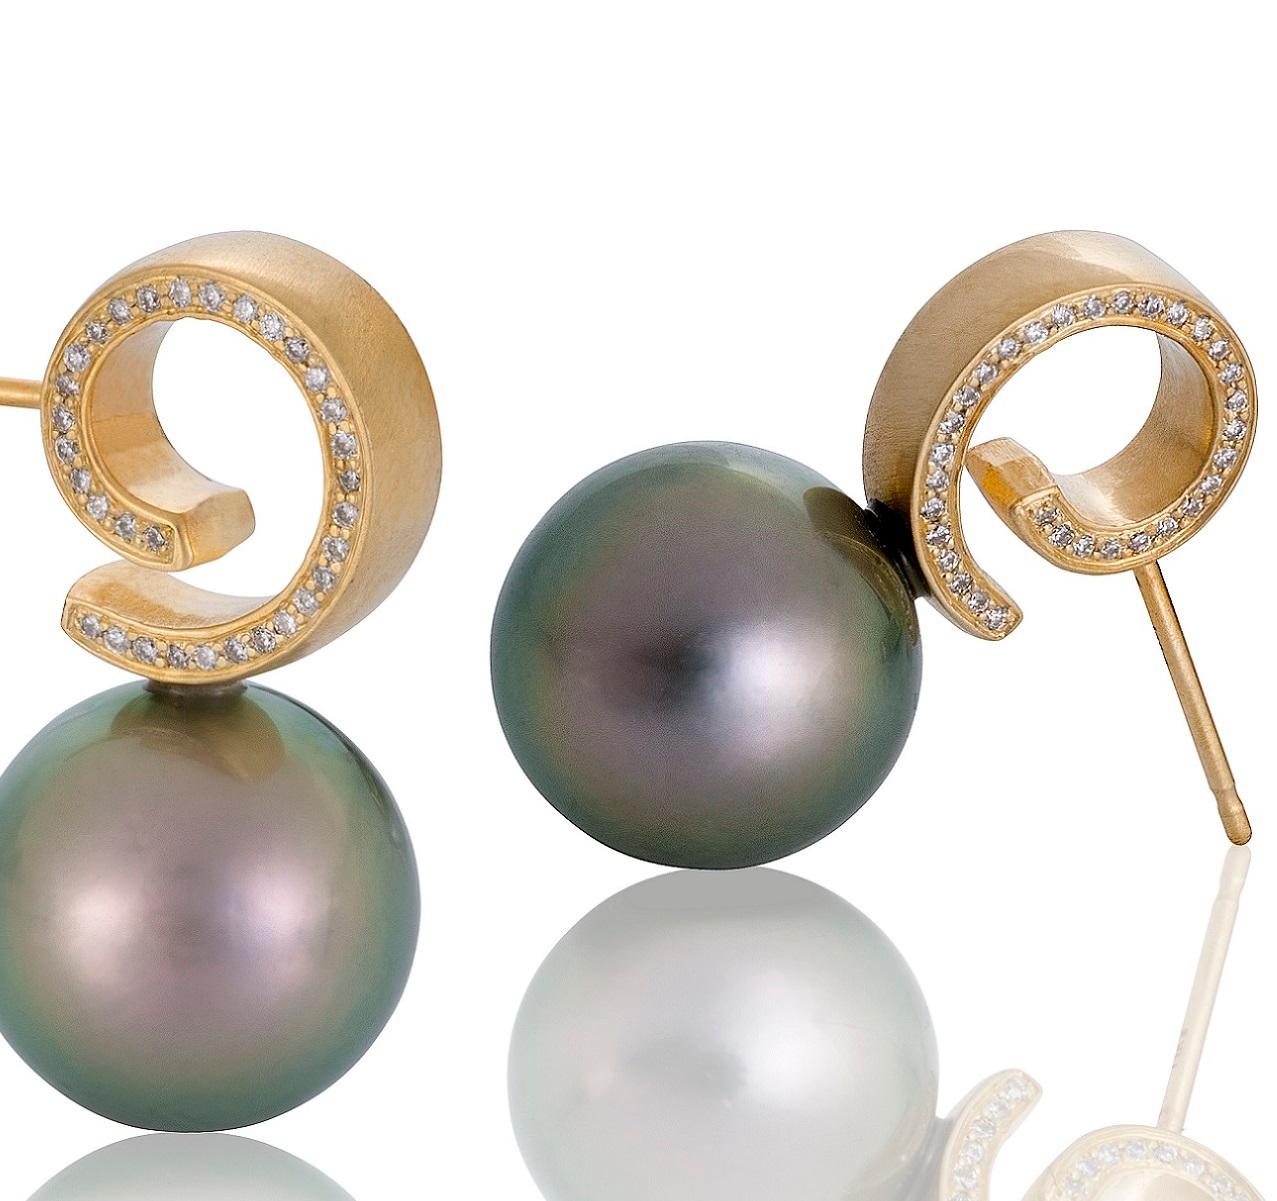 Pour les amoureux des perles, cette paire de boucles d'oreilles en perles de Tahiti Cirrus vous fera tomber en pâmoison. Les perles mesurent plus de 11 mm chacune et présentent les magnifiques nuances irisées de vert, de rose et d'or pour lesquelles